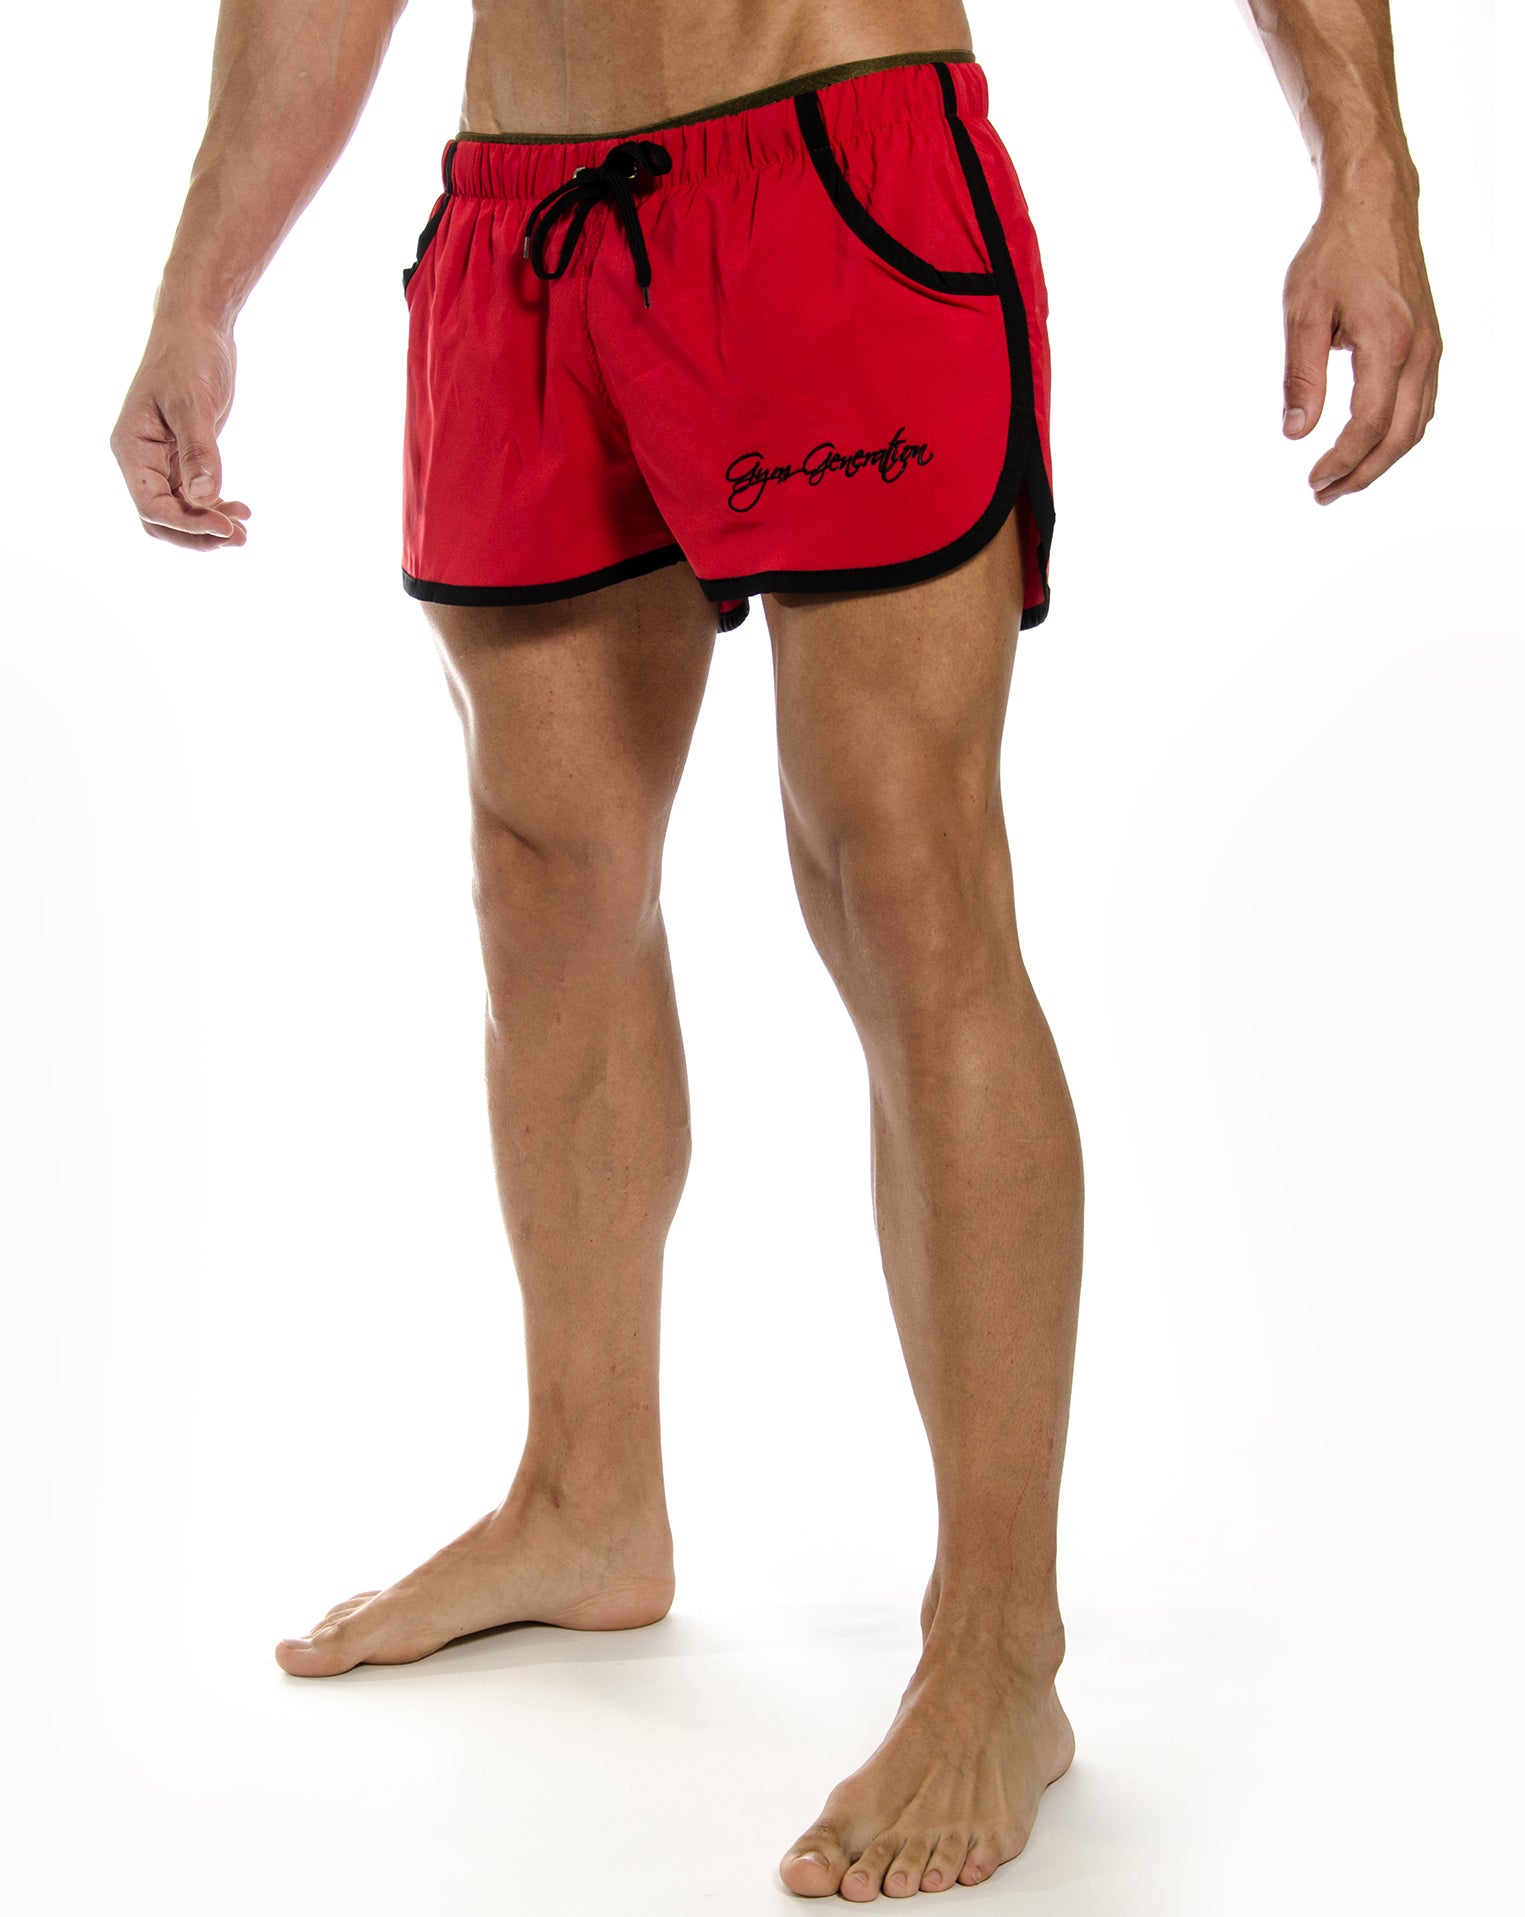 Rote Zyzz Shorts von Gym Generation, aus leichtem und atmungsaktivem Polyester, ideal für intensives Training und Freizeit.